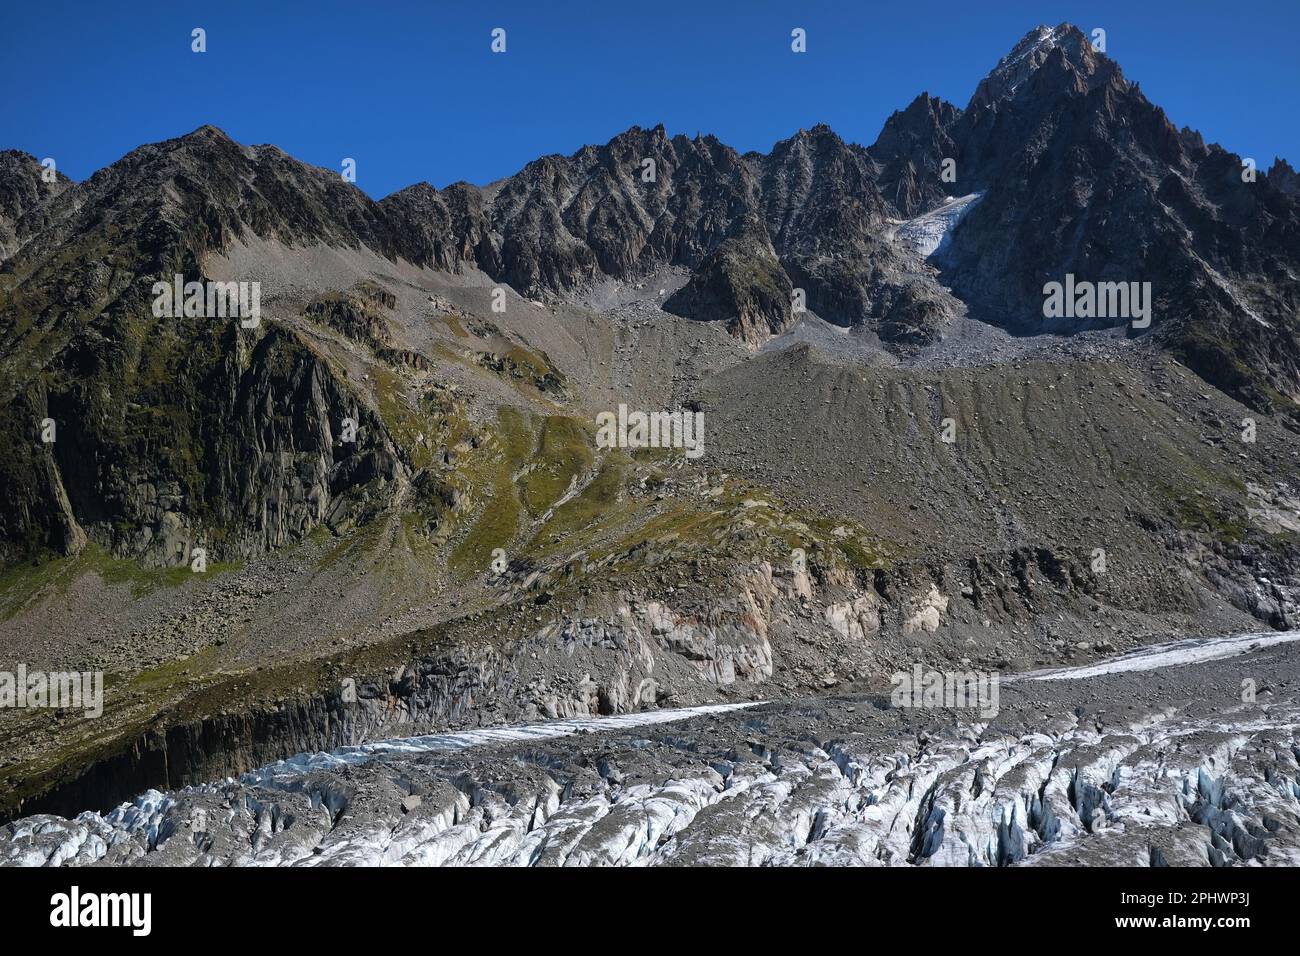 Summer nature landscape with Argentiere Glacier, Chamonix area, Haute Savoie, France Stock Photo